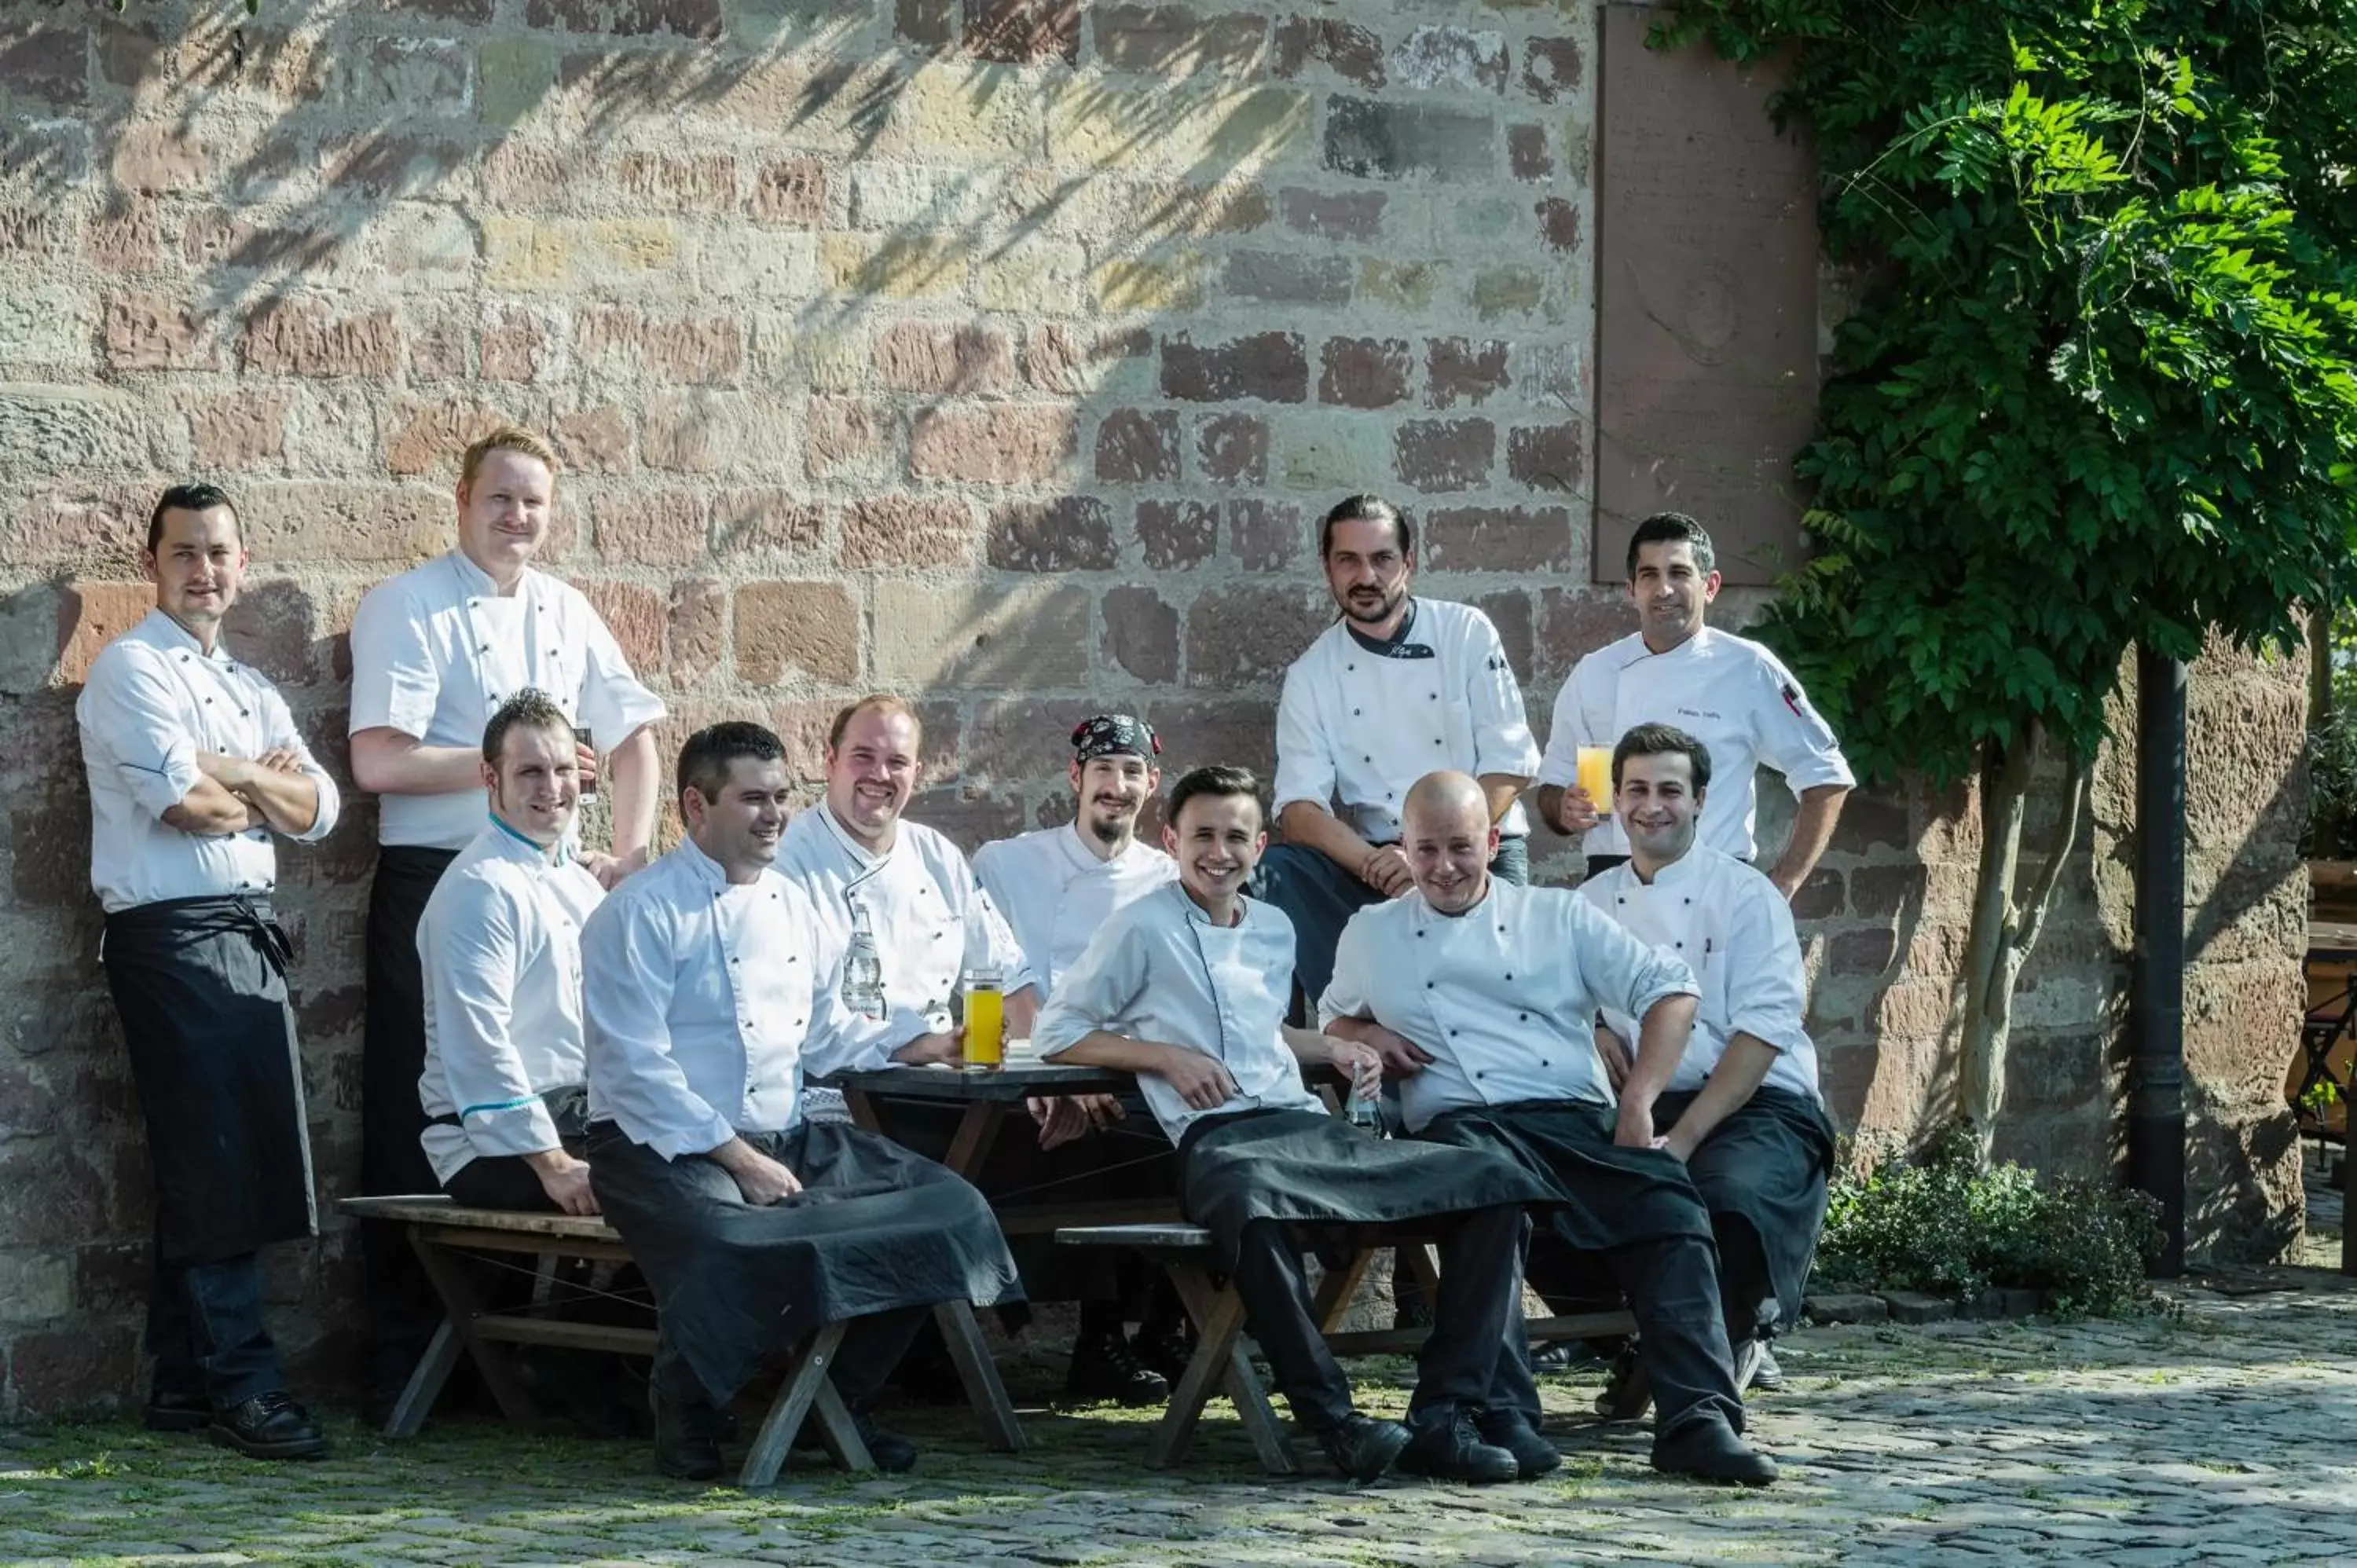 Staff in Kloster Hornbach